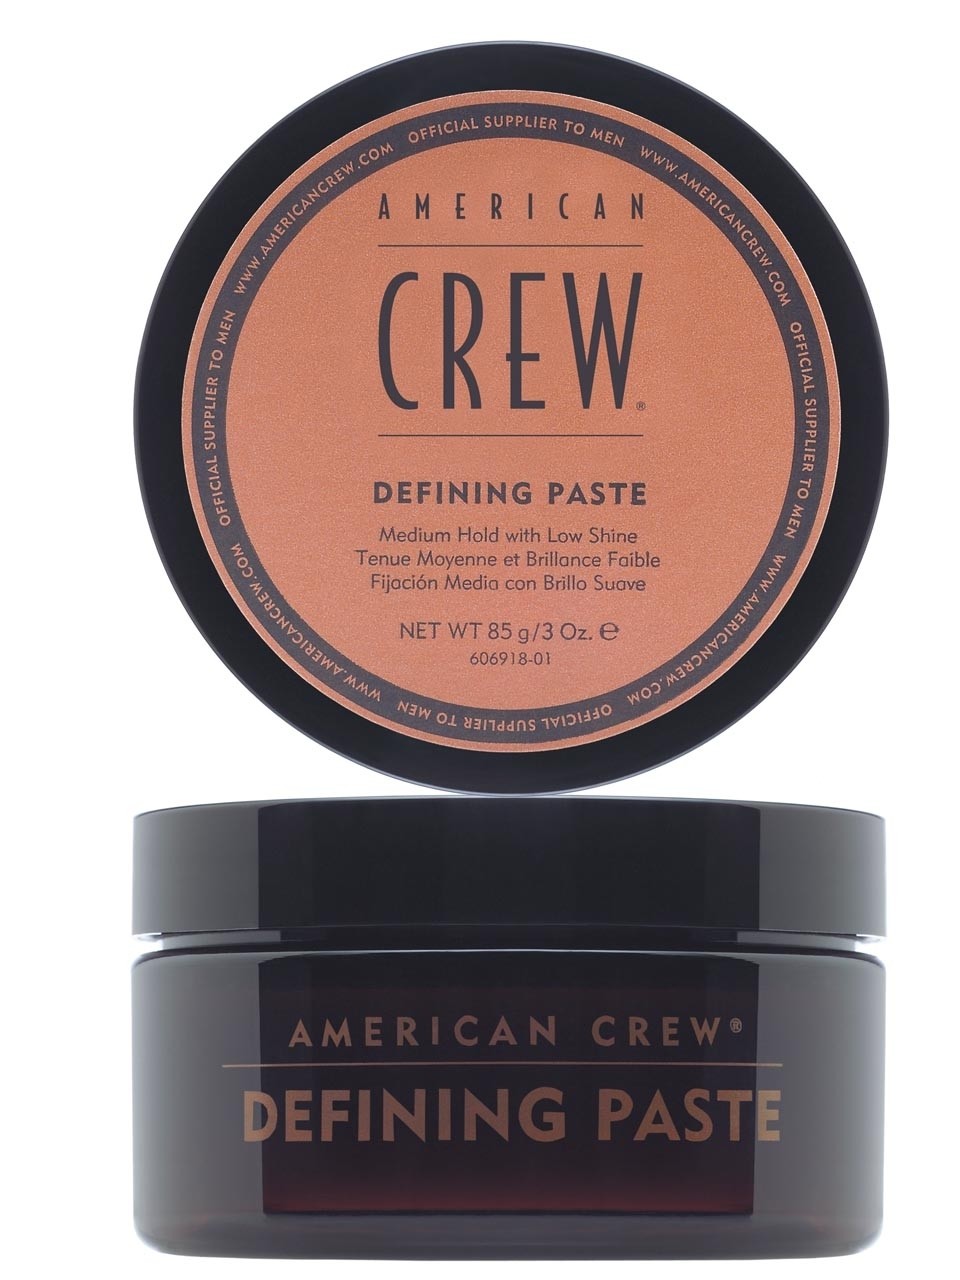 American crew defining paste паста со средней фиксацией и низким уровнем блеска для укладки волос 85г